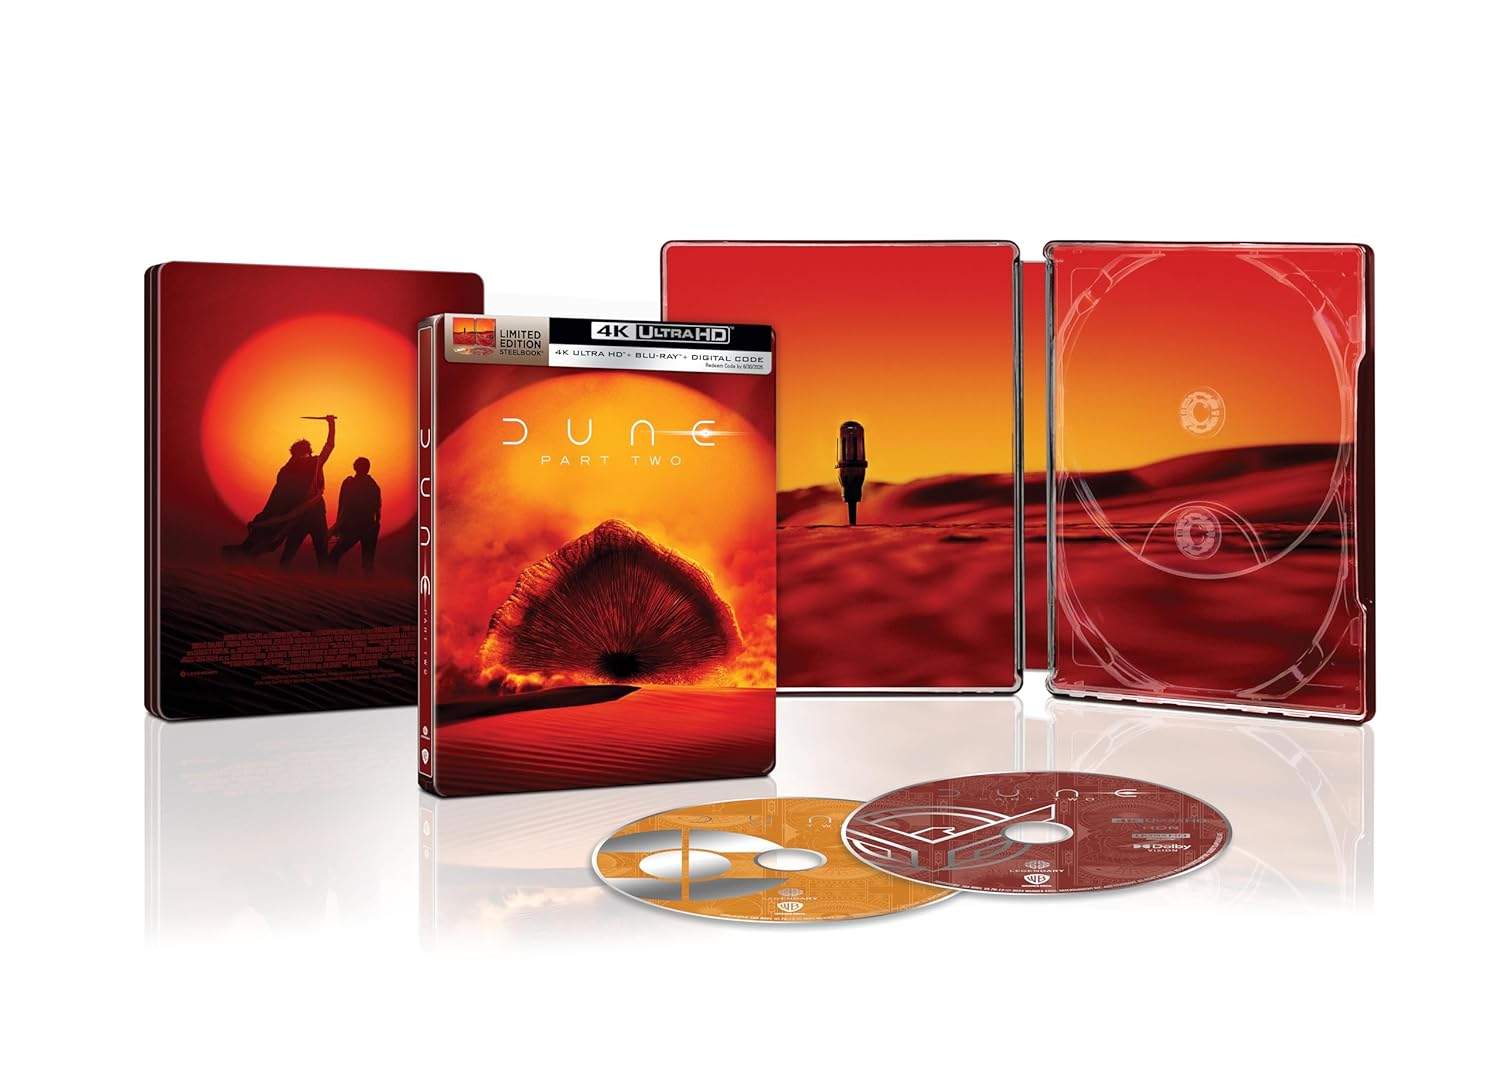 Dune 2 SteelBook Best Buy